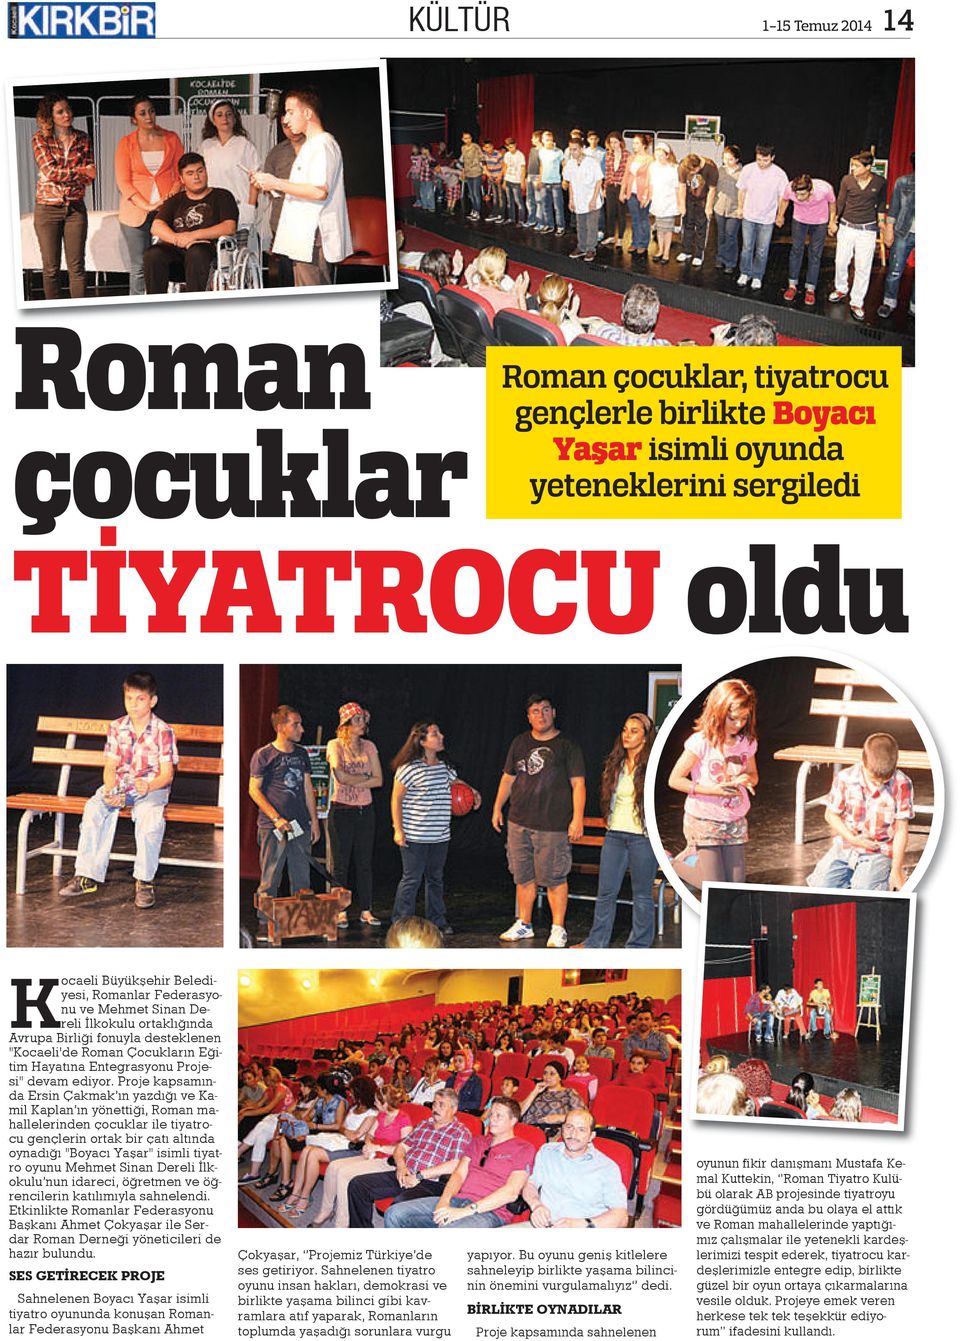 Proje kapsamında Ersin Çakmak ın yazdığı ve Kamil Kaplan ın yönettiği, Roman mahallelerinden çocuklar ile tiyatrocu gençlerin ortak bir çatı altında oynadığı "Boyacı Yaşar" isimli tiyatro oyunu